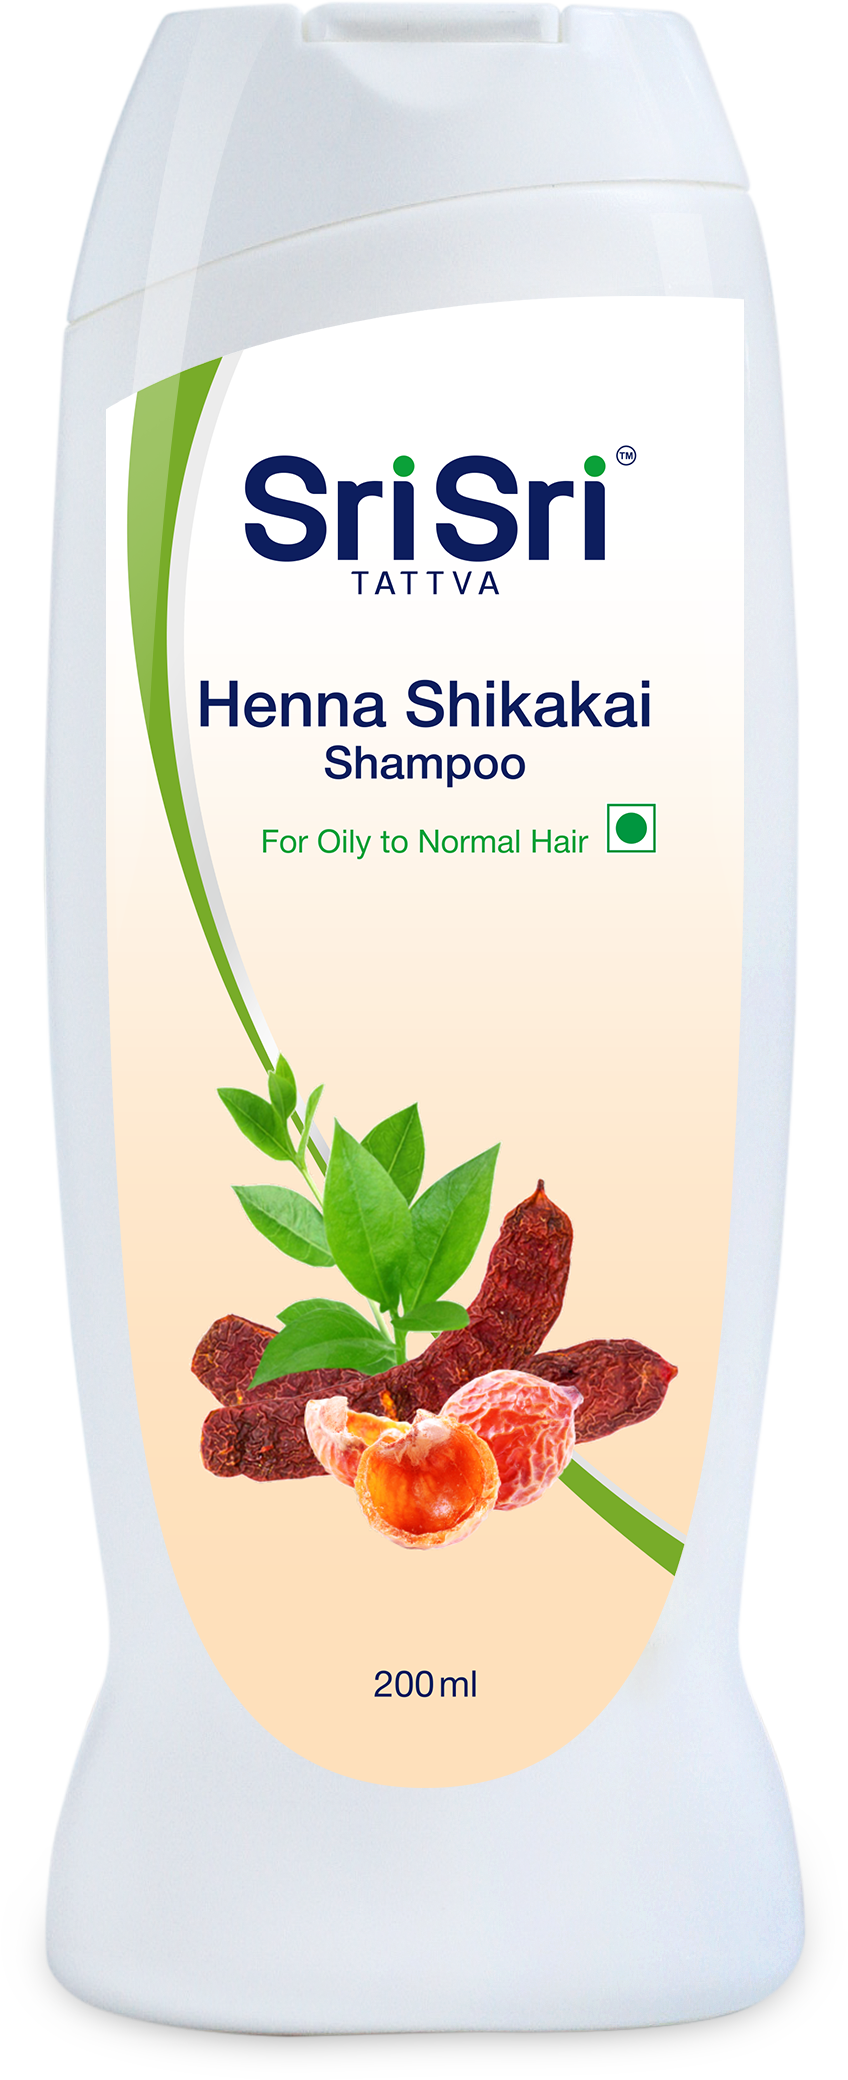 Sri Sri Tattva Henna Shikakai Shampoo